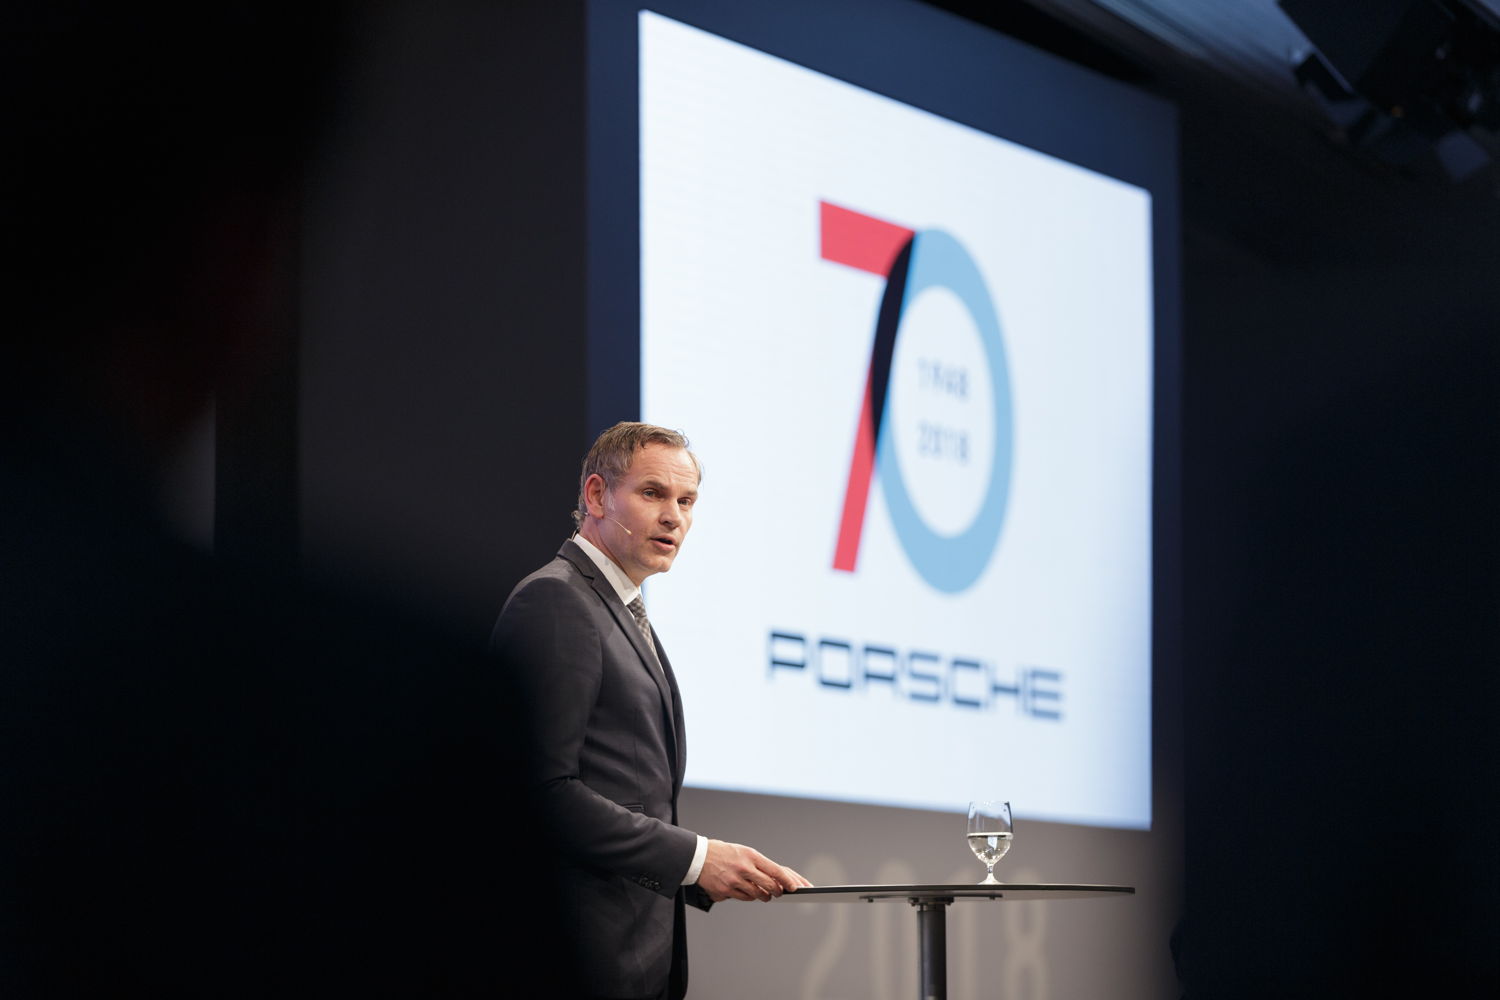 “Porsche siempre será Porsche, la marca líder en exclusividad, deportividad y movilidad”, dijo Oliver Blume, Presidente del Consejo Directivo de Porsche AG.